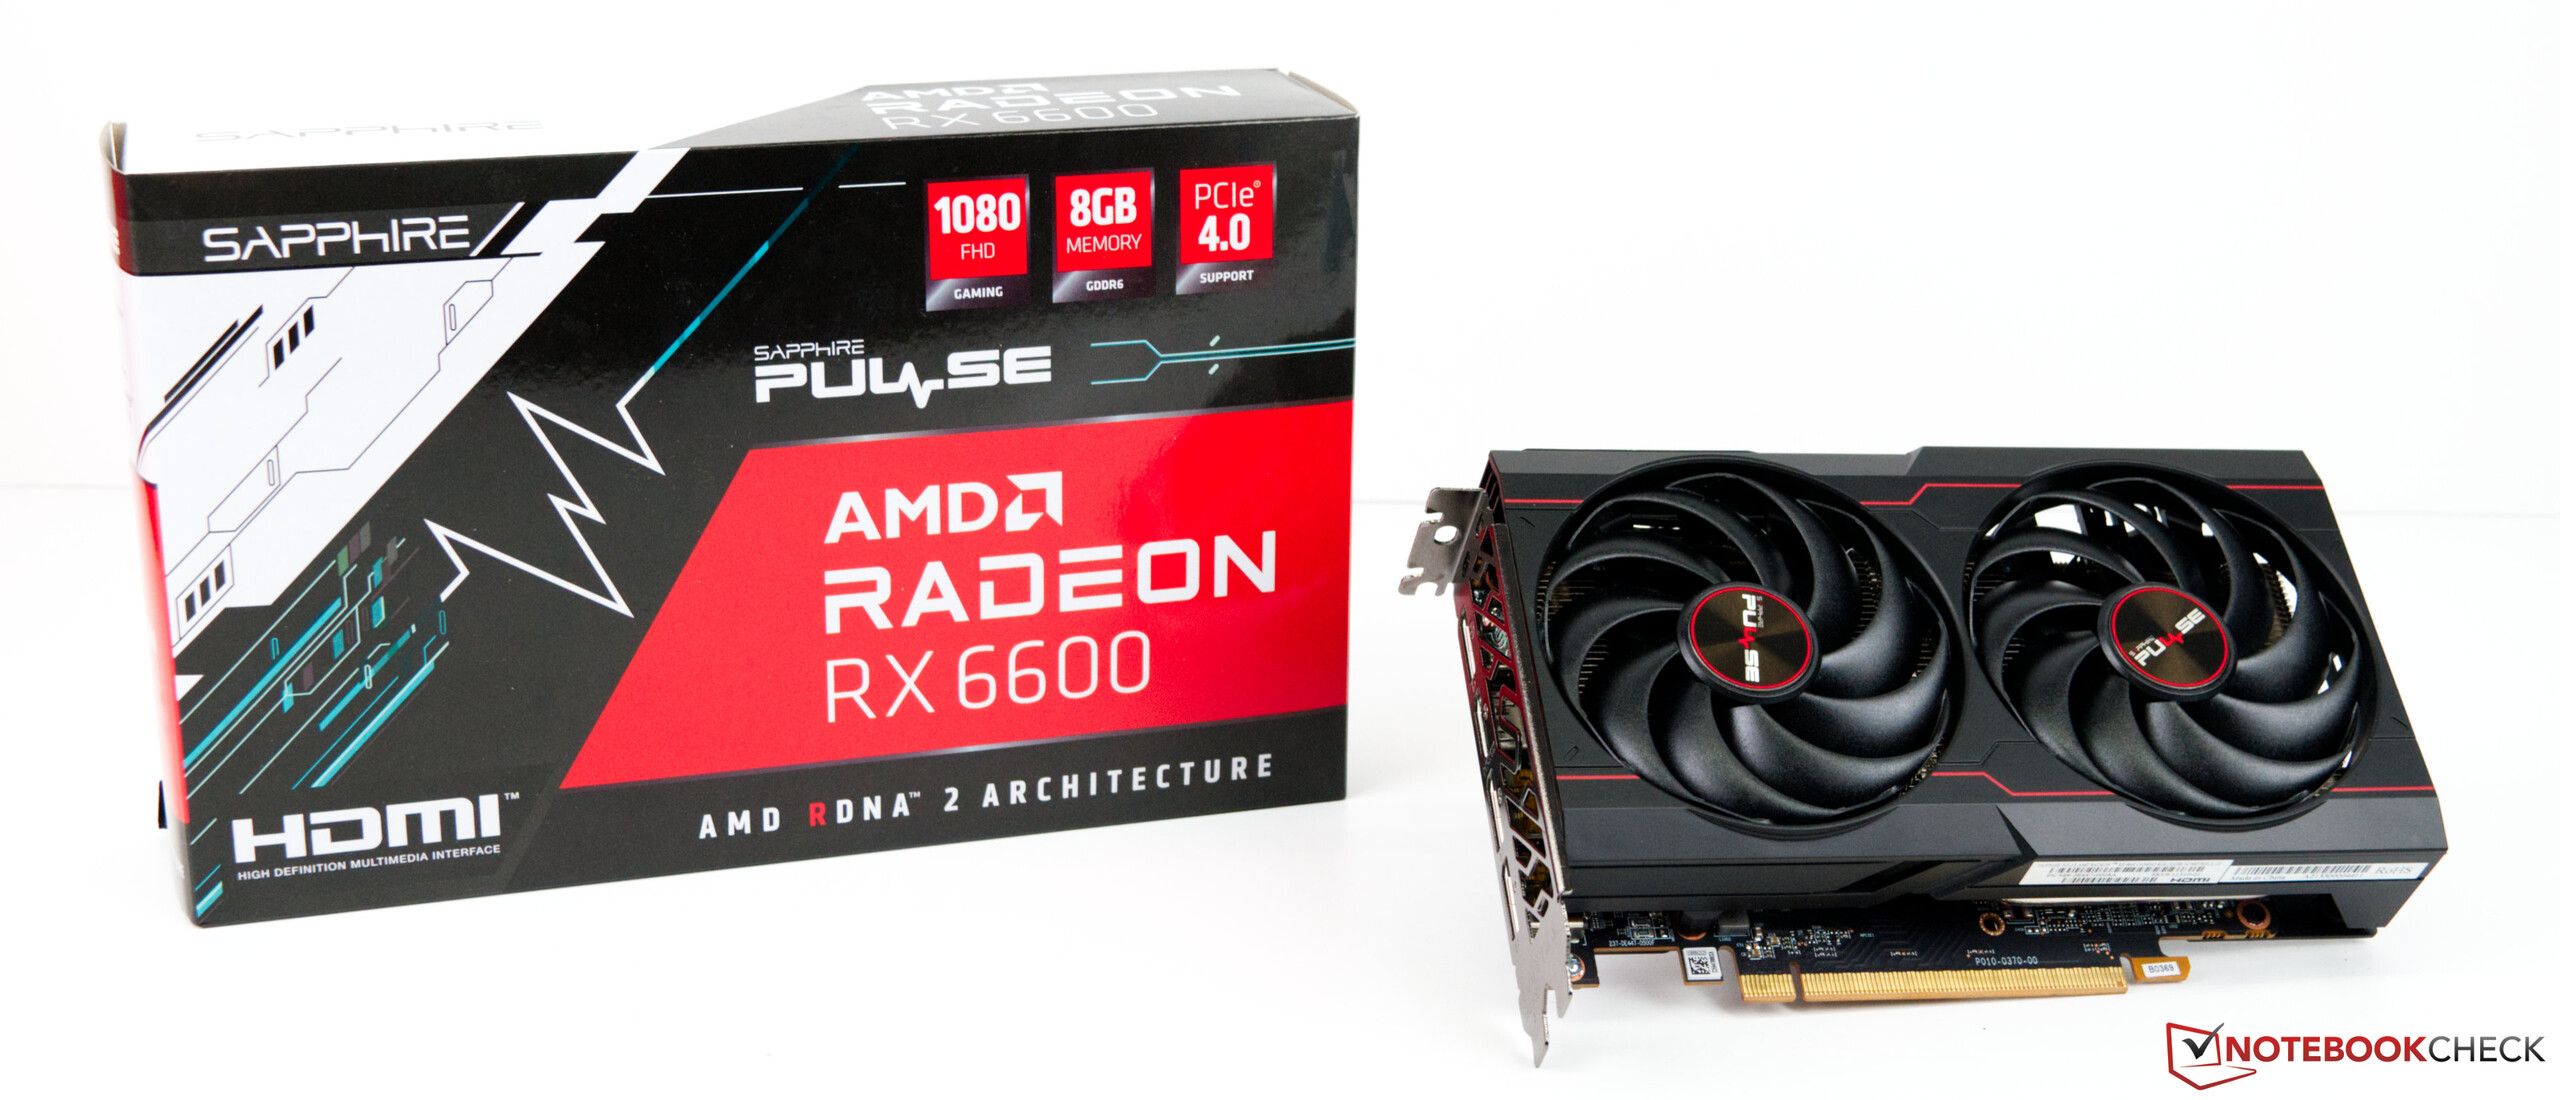 Recension av AMD Radeon RX 6600 Mid-Range GPU för stationära datorer 